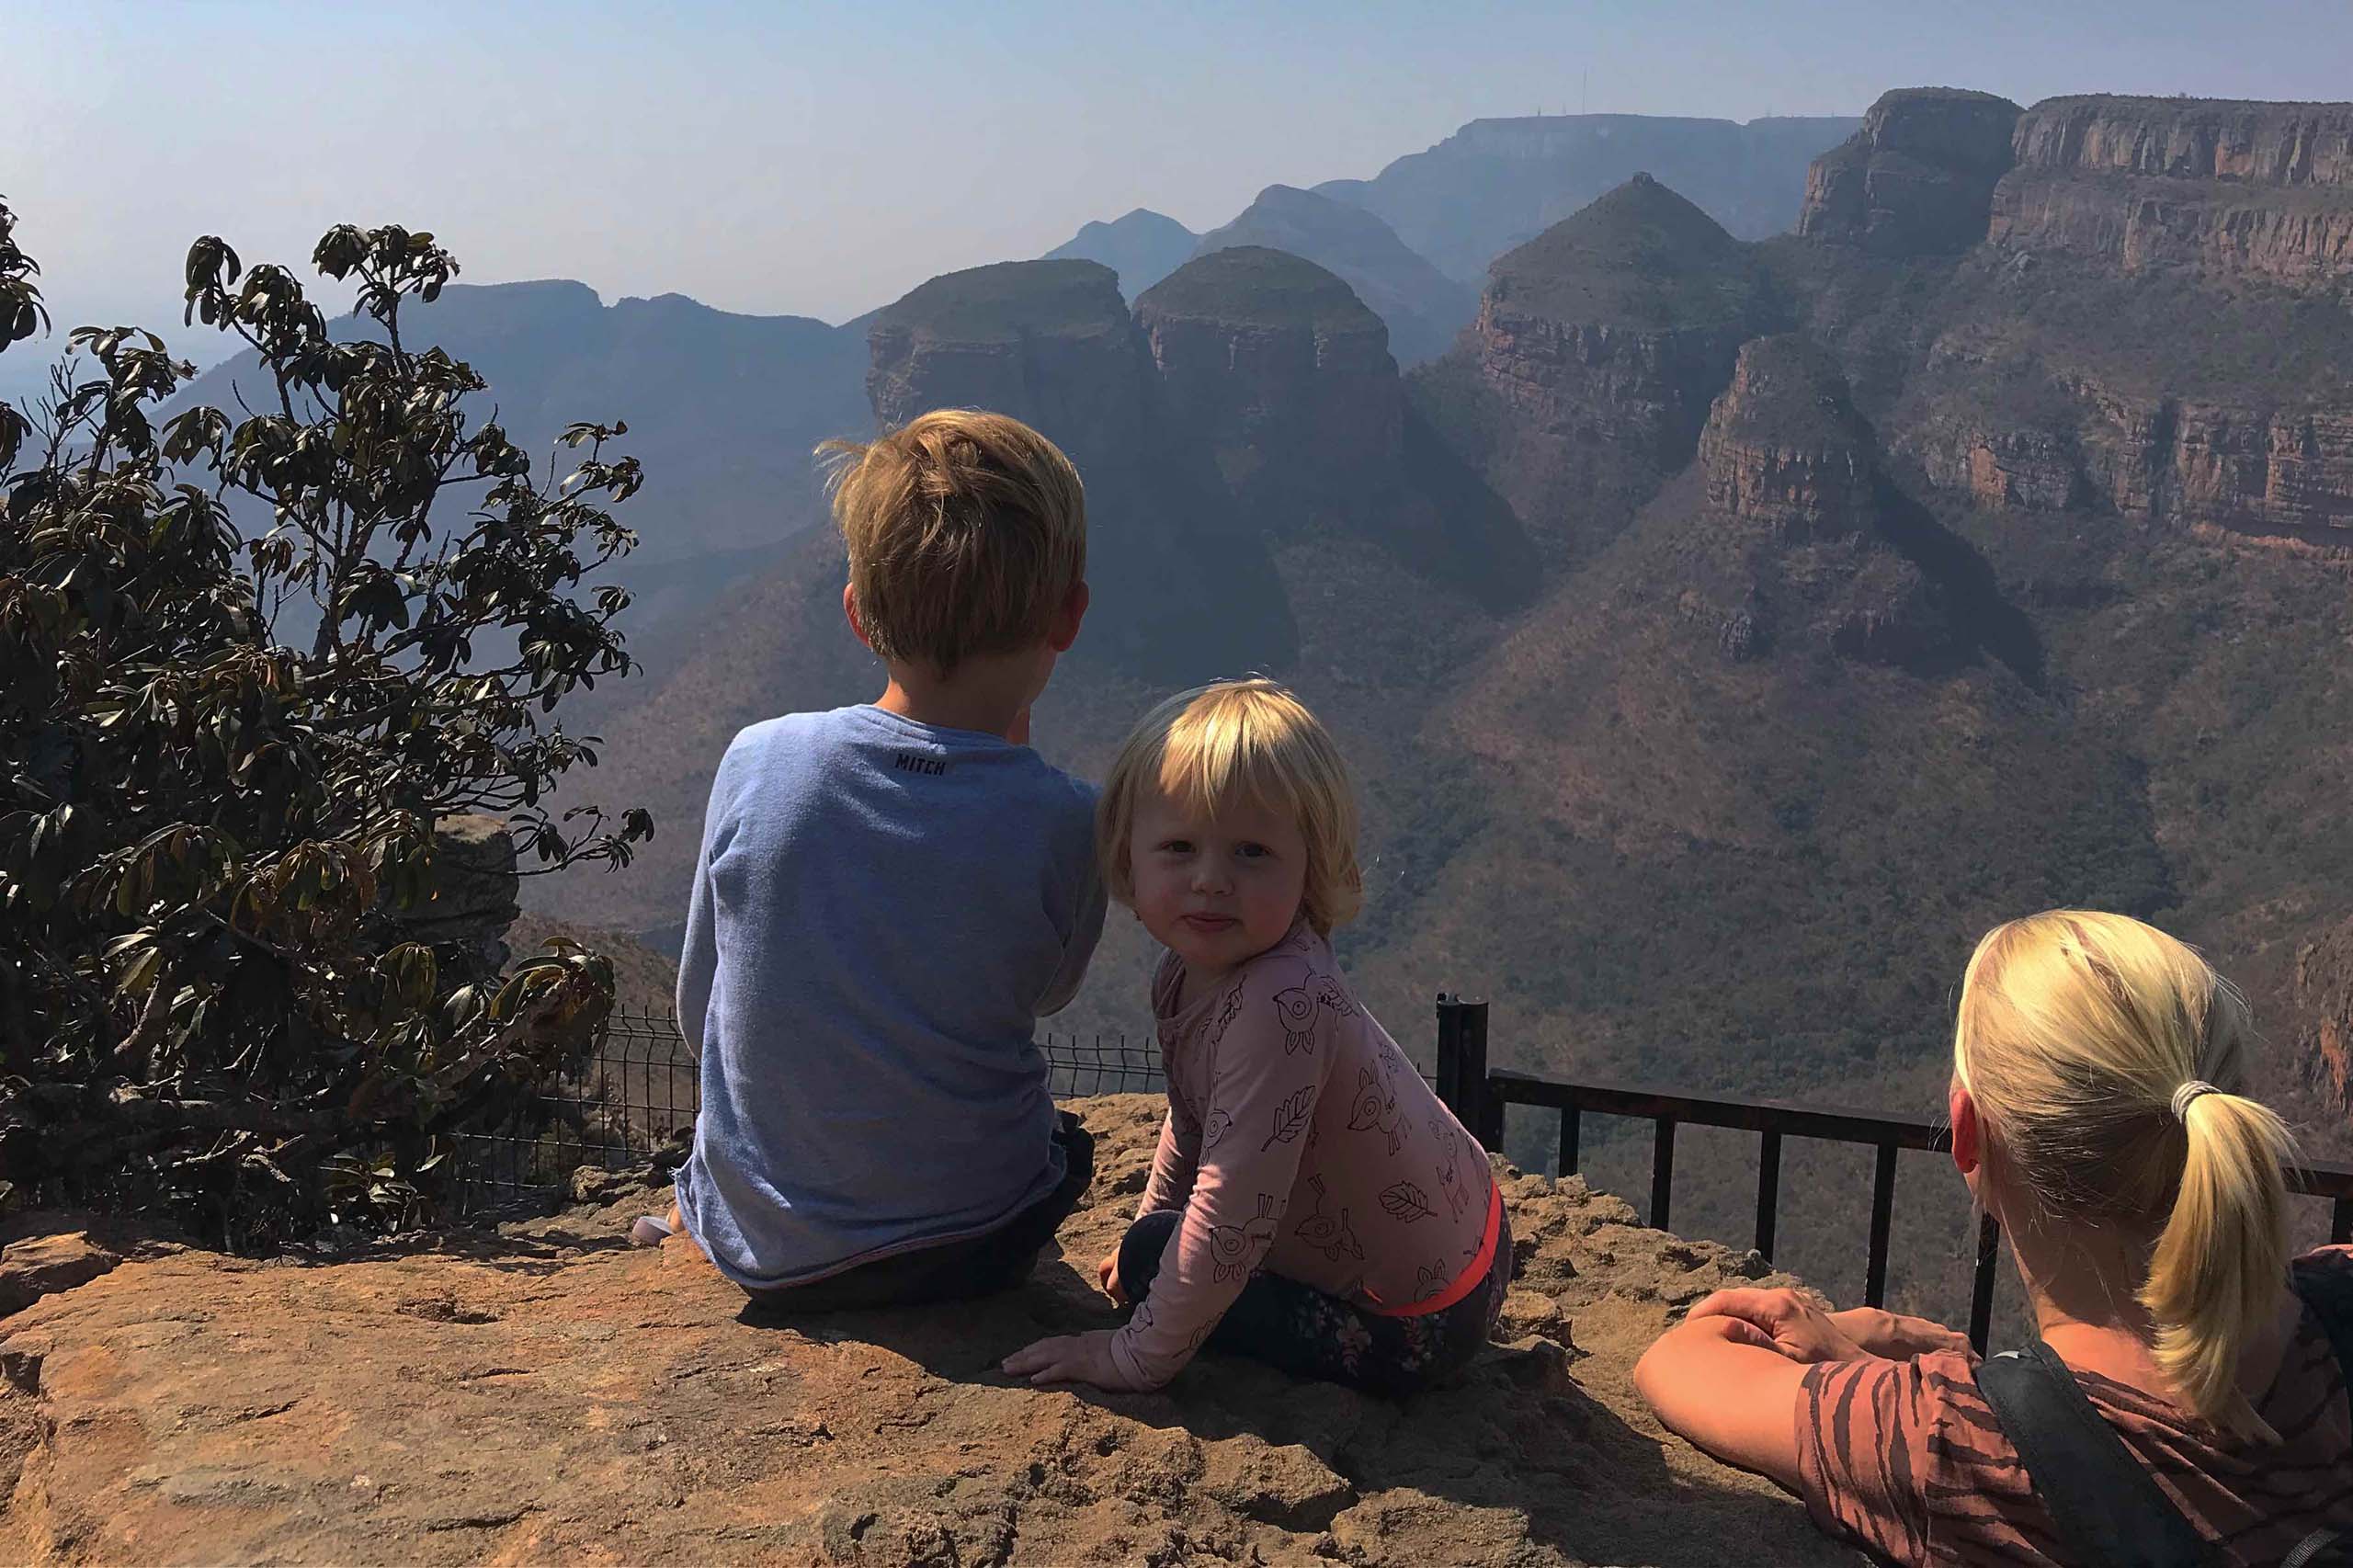 Rondreis Zuid-Afrika met kinderen, we starten met de panoramaroute